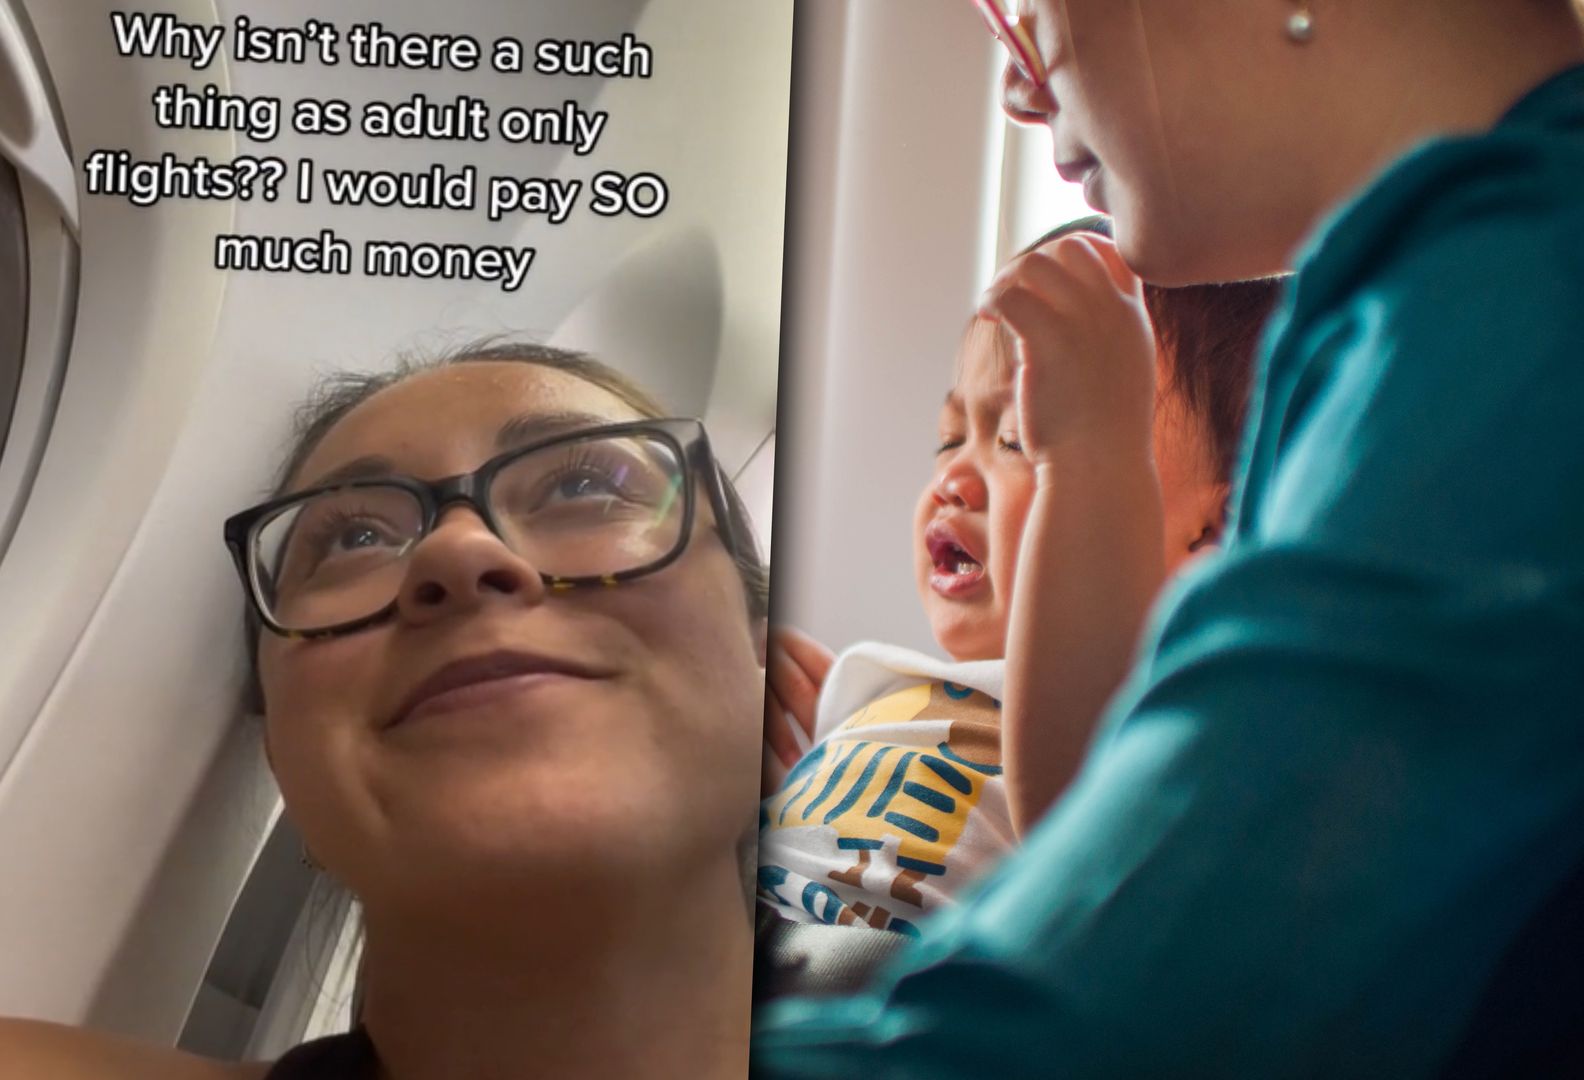 Narzekała na płacz dziecka podczas lotu. Jej pomysł podzielił internautów